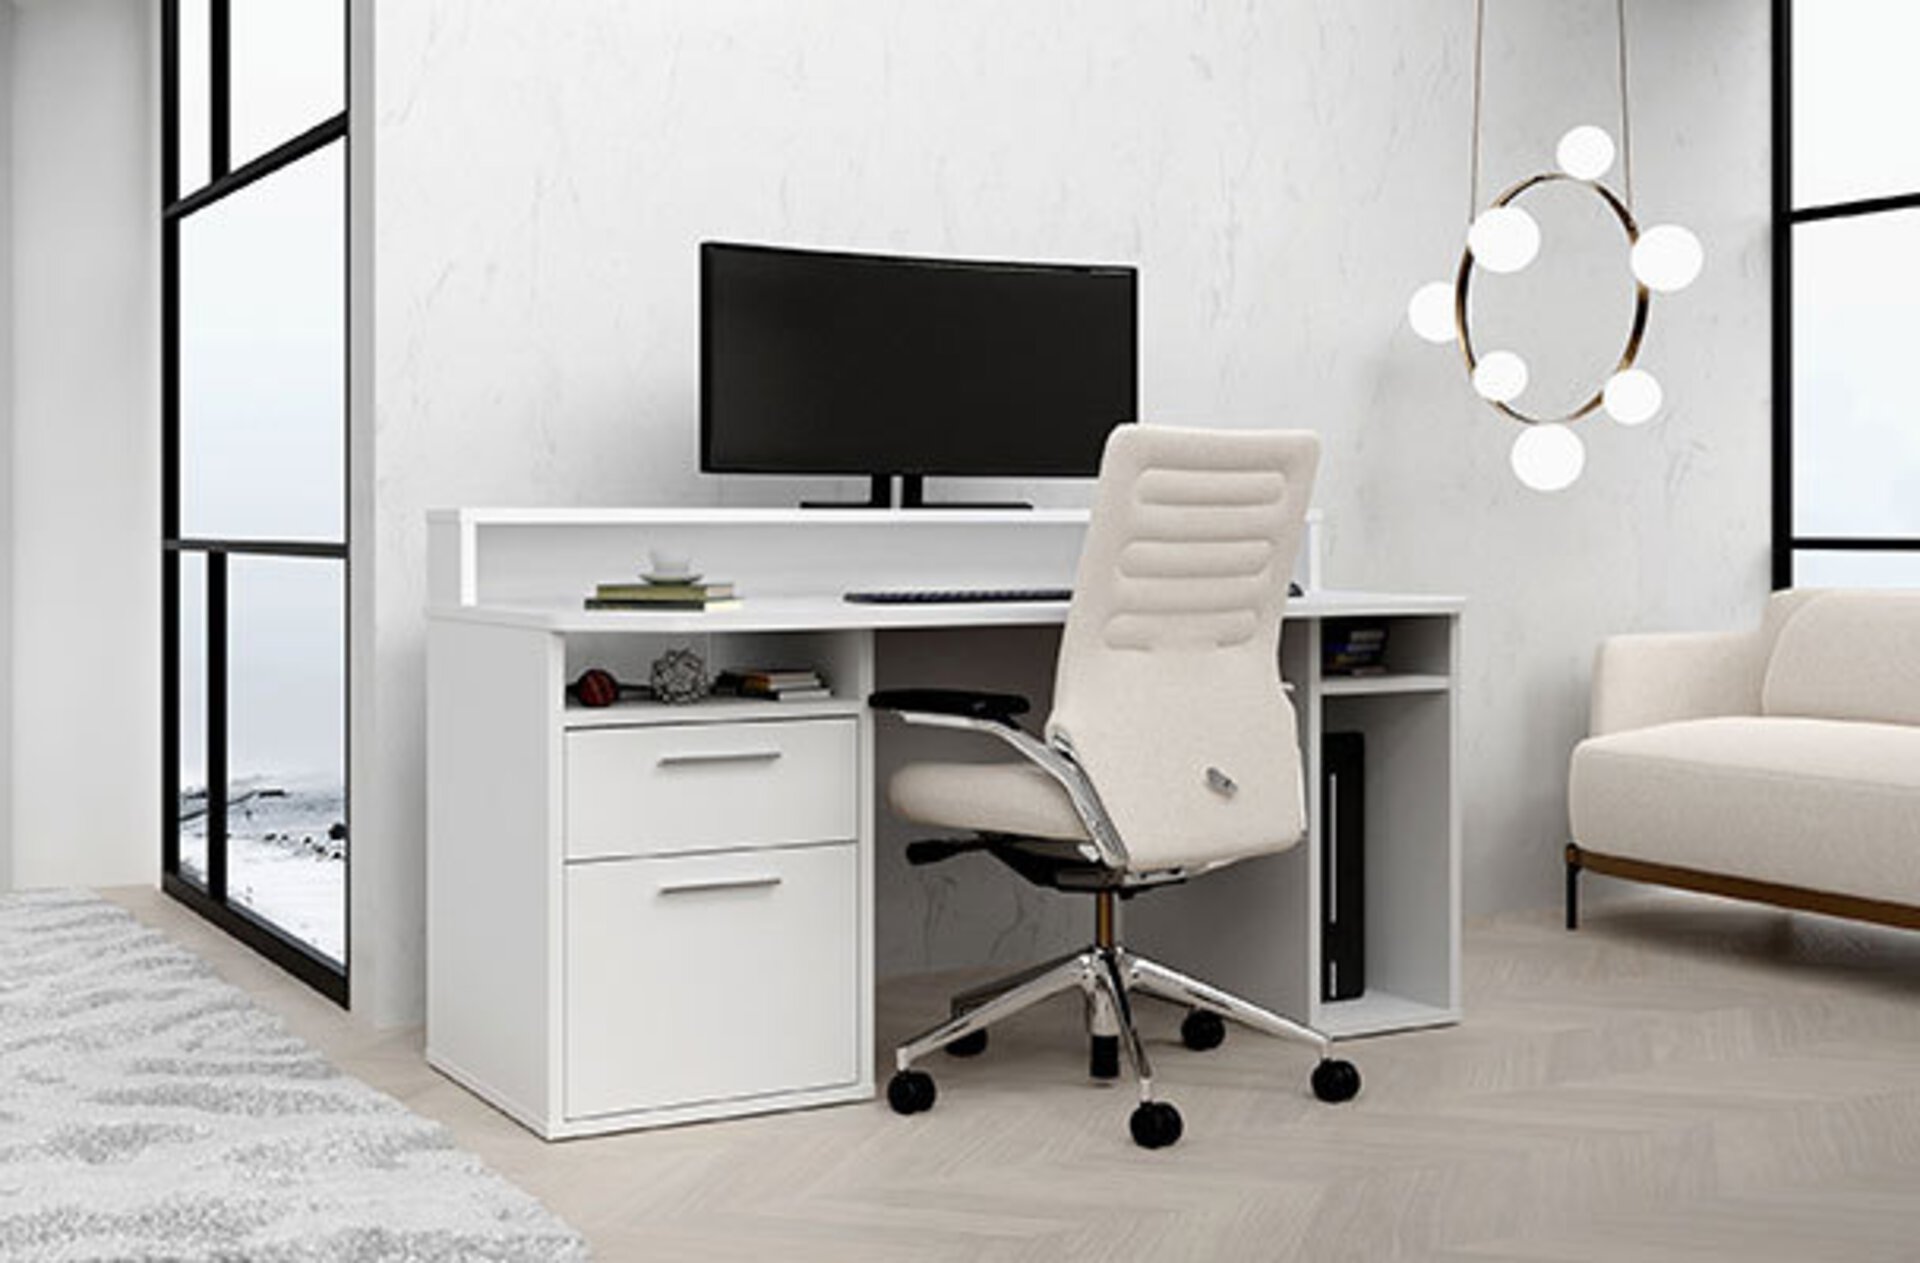 Arbeitsecke bestehend aus weißem Computertisch und davor ein weißer, lederbezogener Drehstuhl. Das Bild dient als Milieubild für den Inspirationsbereich "Der richtige Bürostuhl".